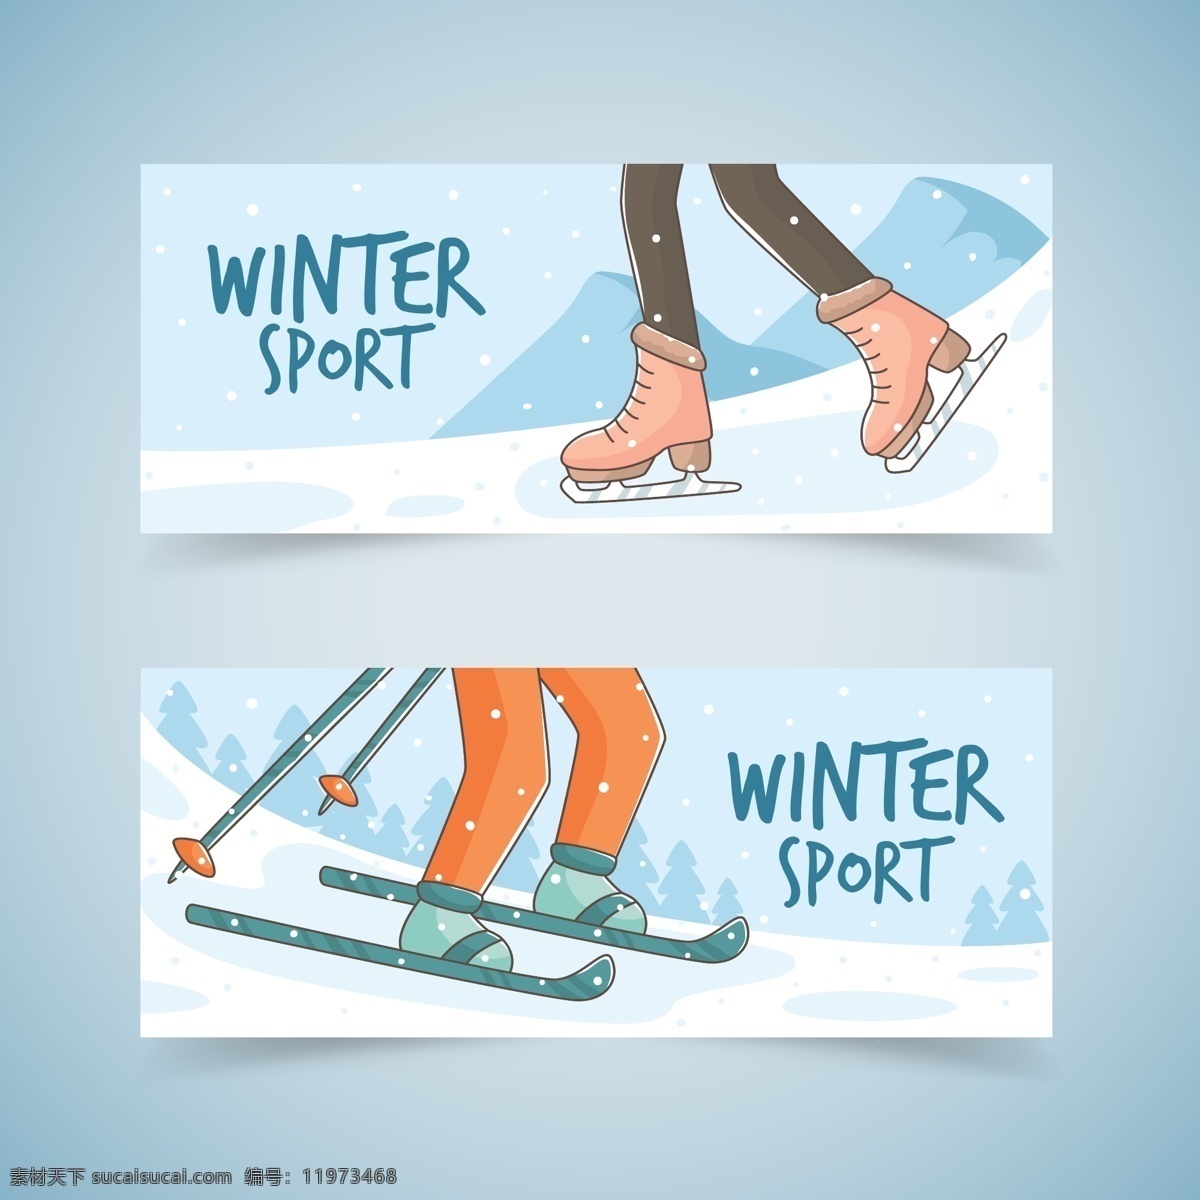 滑雪运动 运动 体育运动 奥运会 比赛 运动海报 运动比赛海报 运动员 户外运动 室内运动 运动俱乐部 体育馆海报 卡通设计